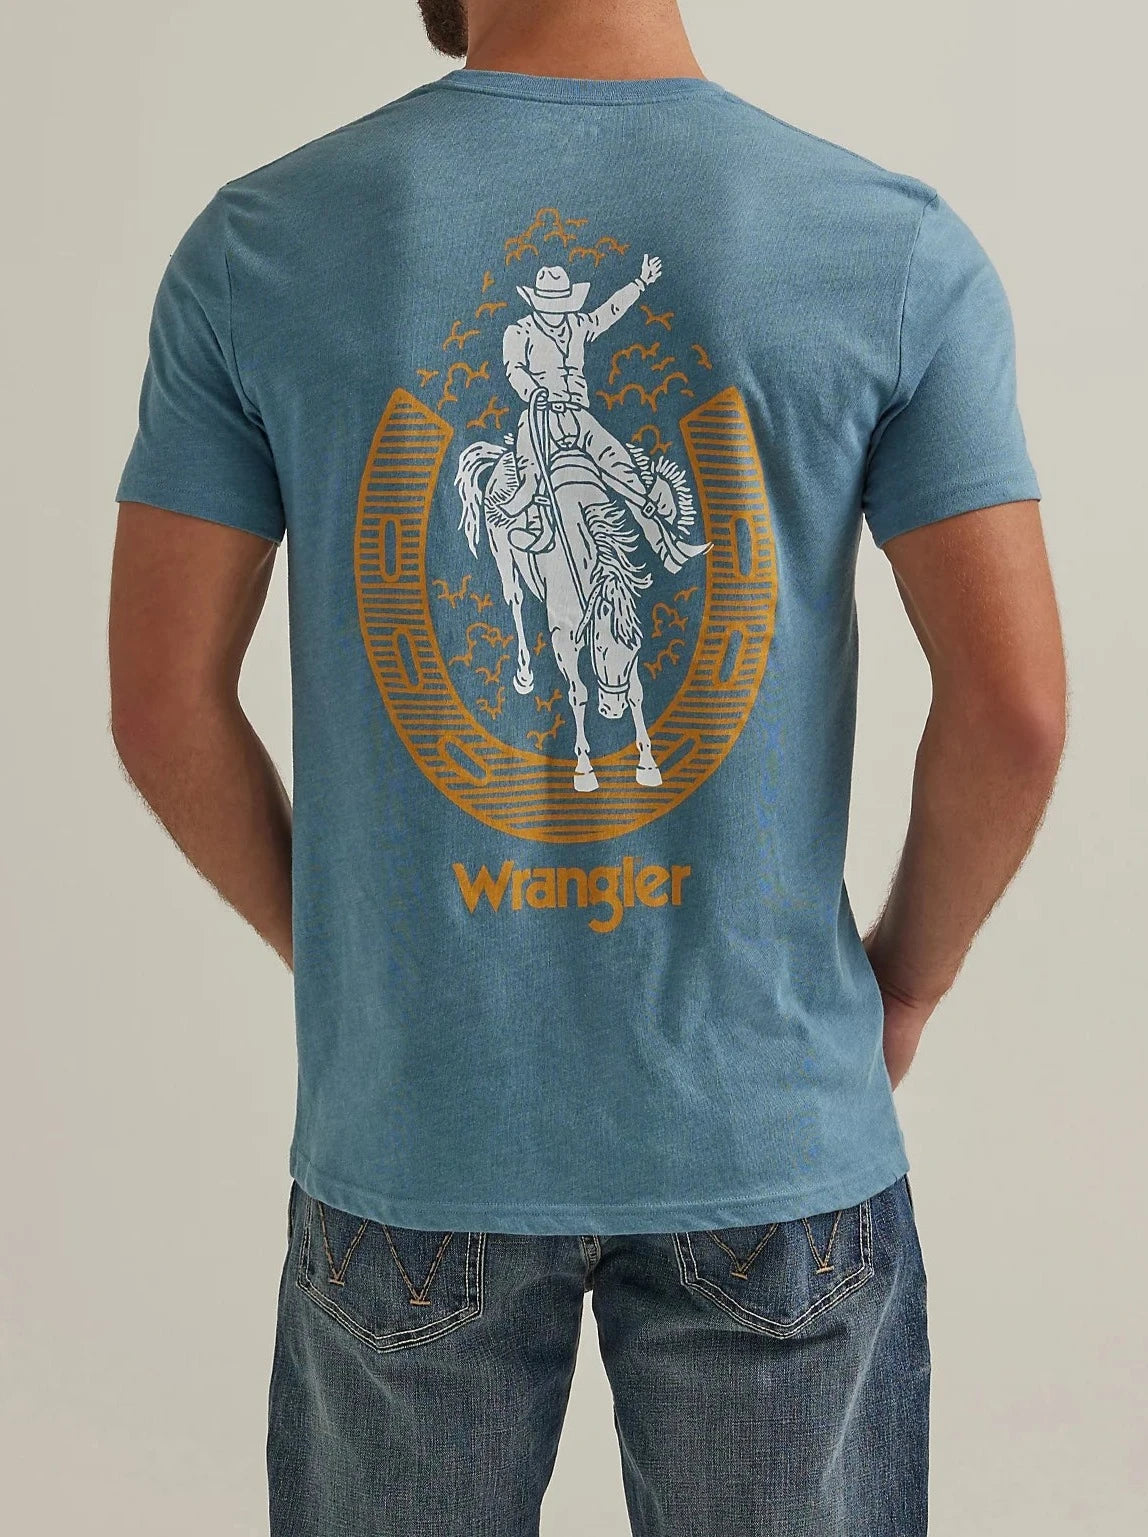 Wrangler Mens Back Graphic T-Shirt